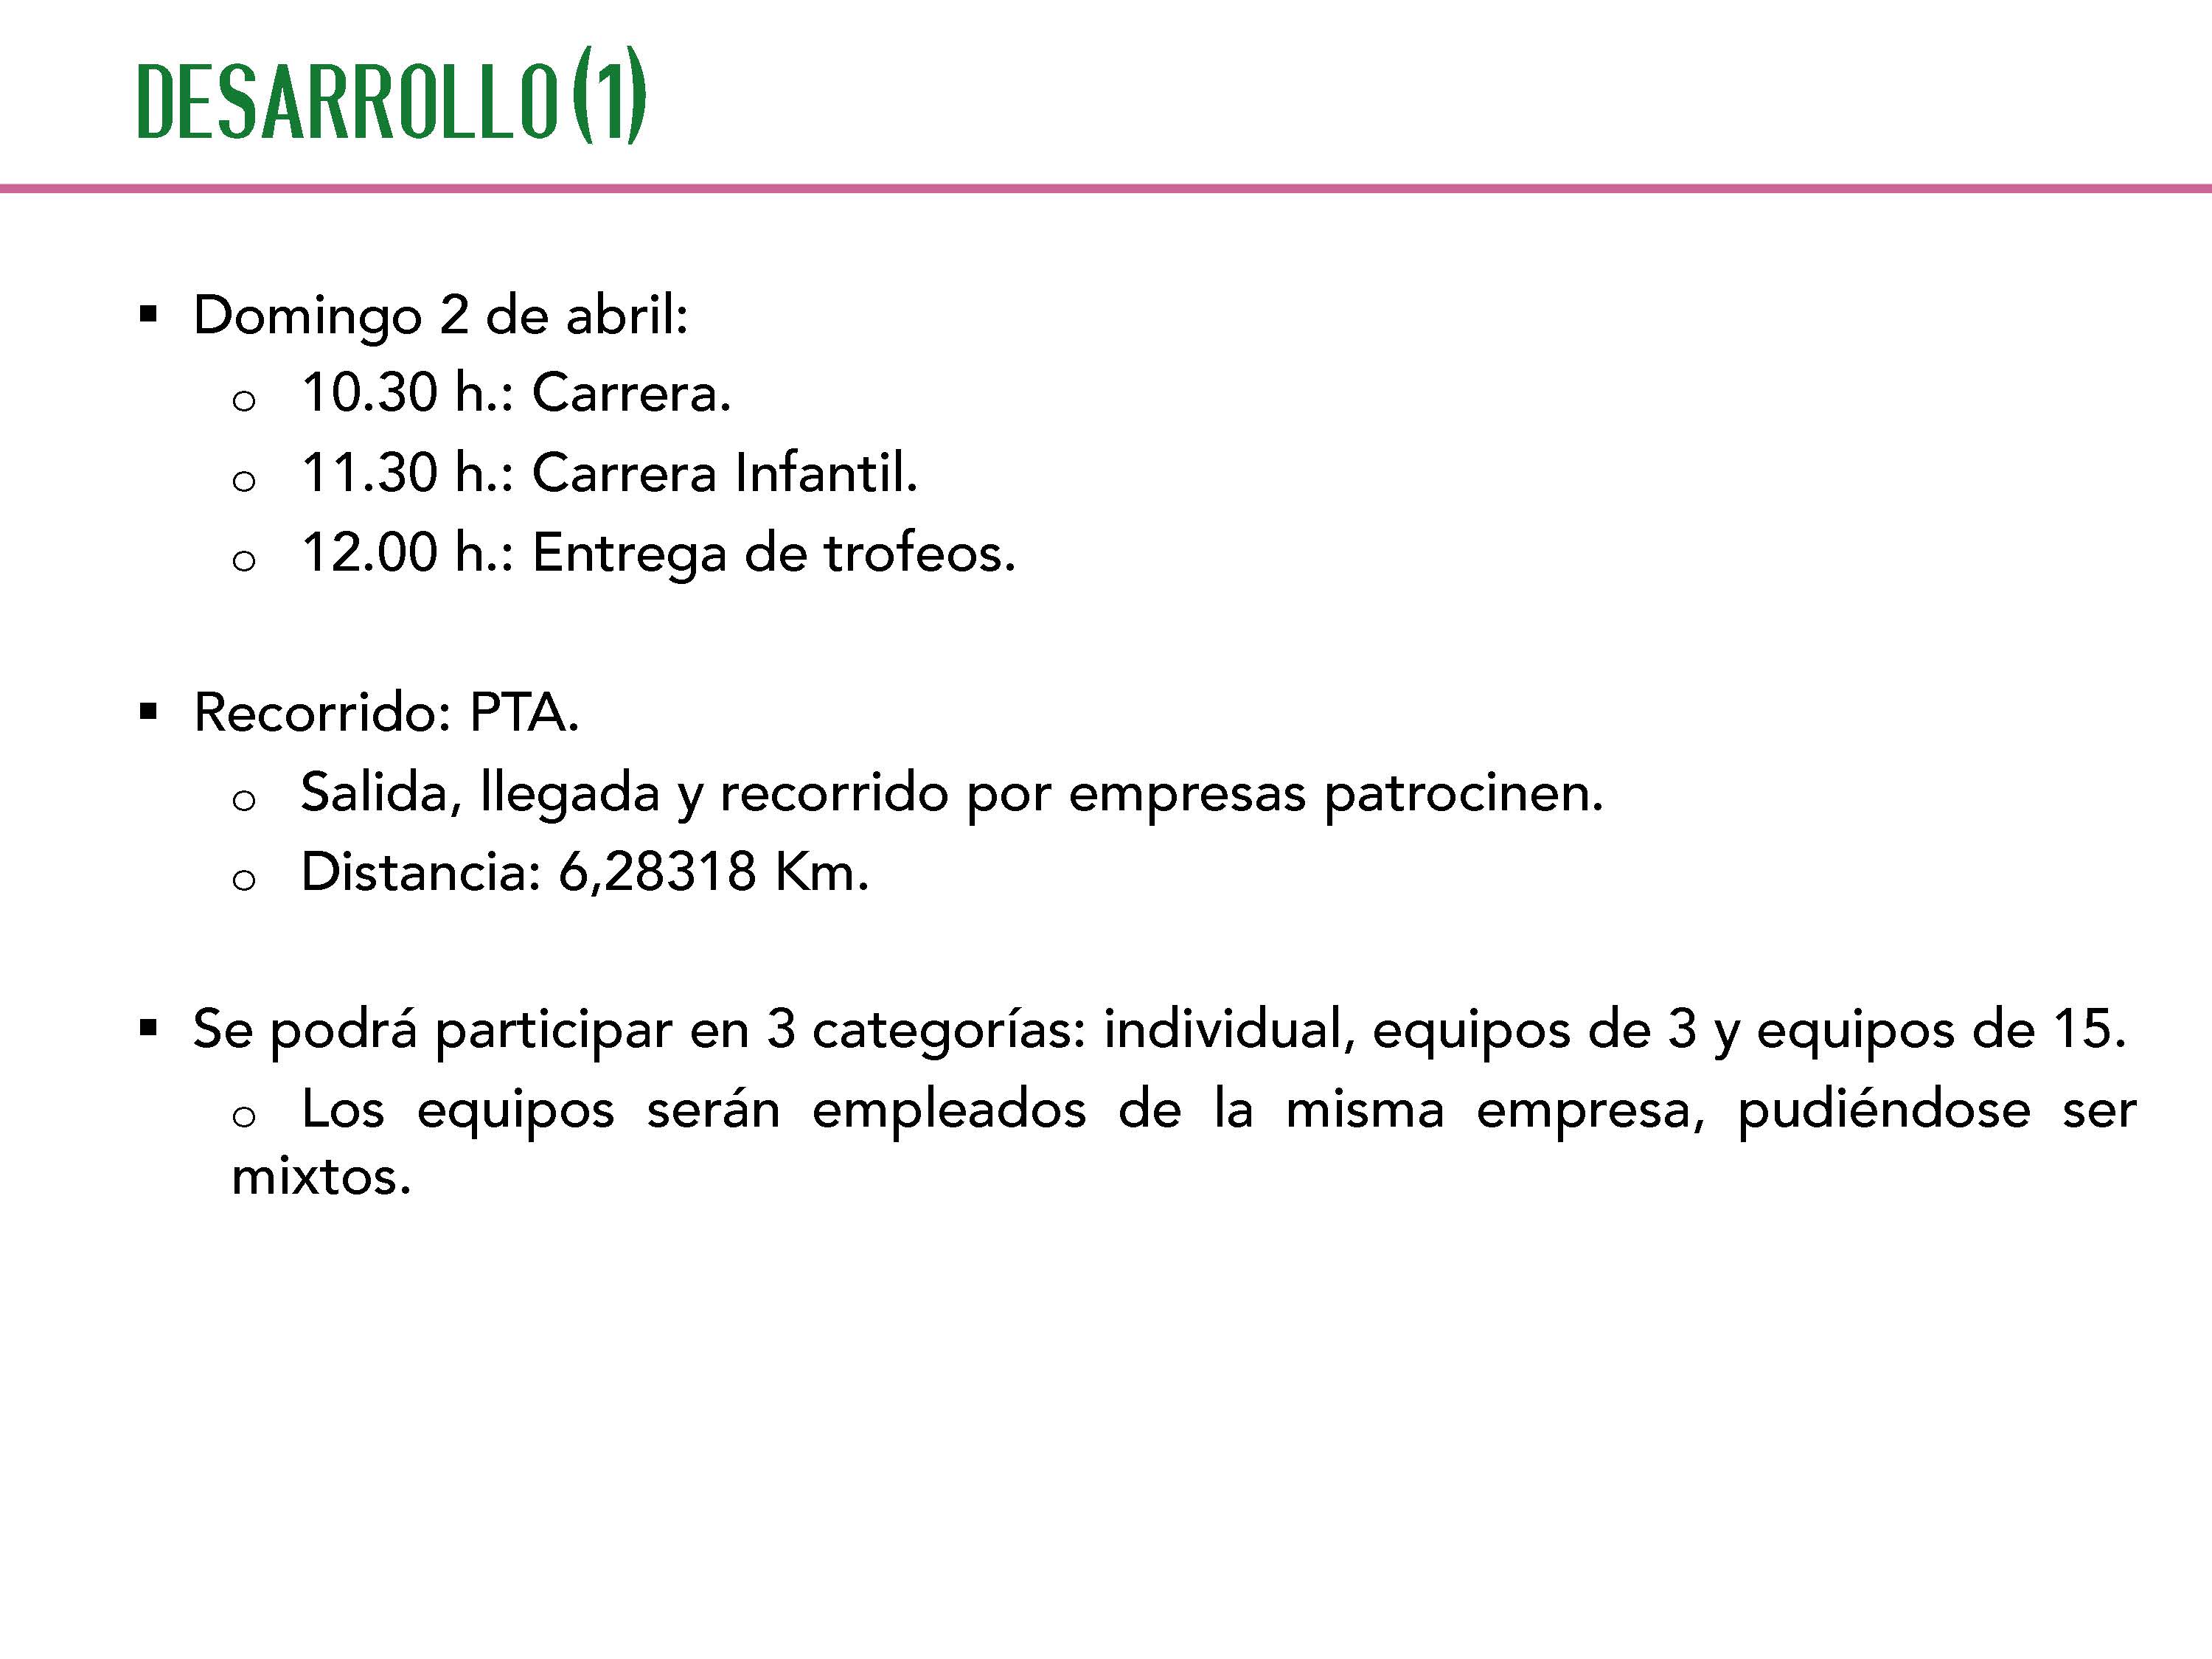 TAURUN-AECC_Colegio_Graduados_Sociales_Malaga_y_Melilla_1_Pgina_3